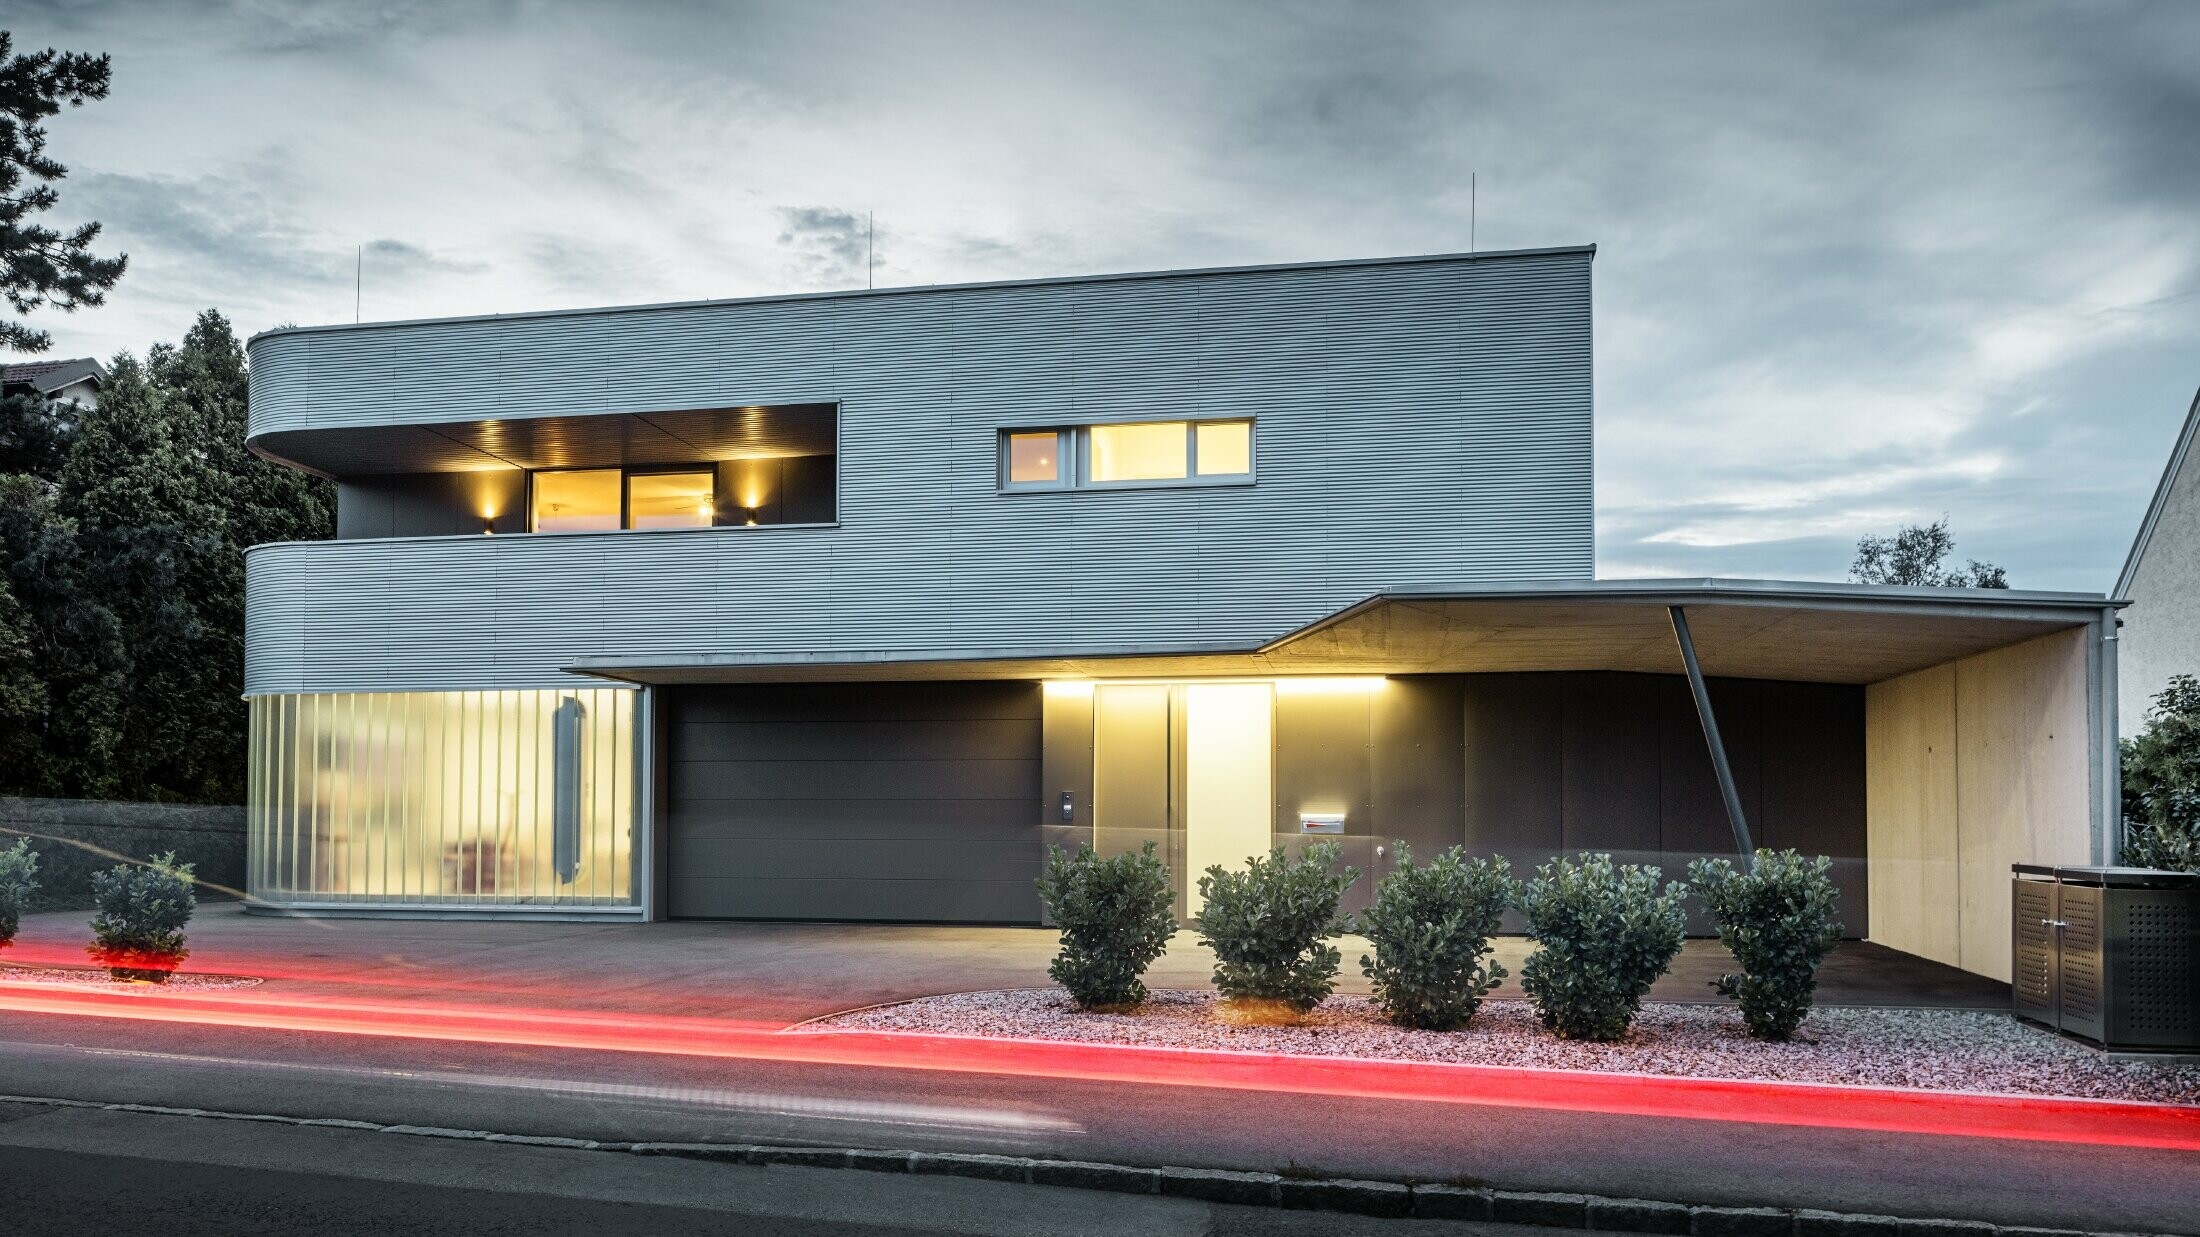 Bâtiment résidentiel moderne avec façade couleur aluminium naturel de profil sinus PREFA, avec garage, dans la lumière du soir